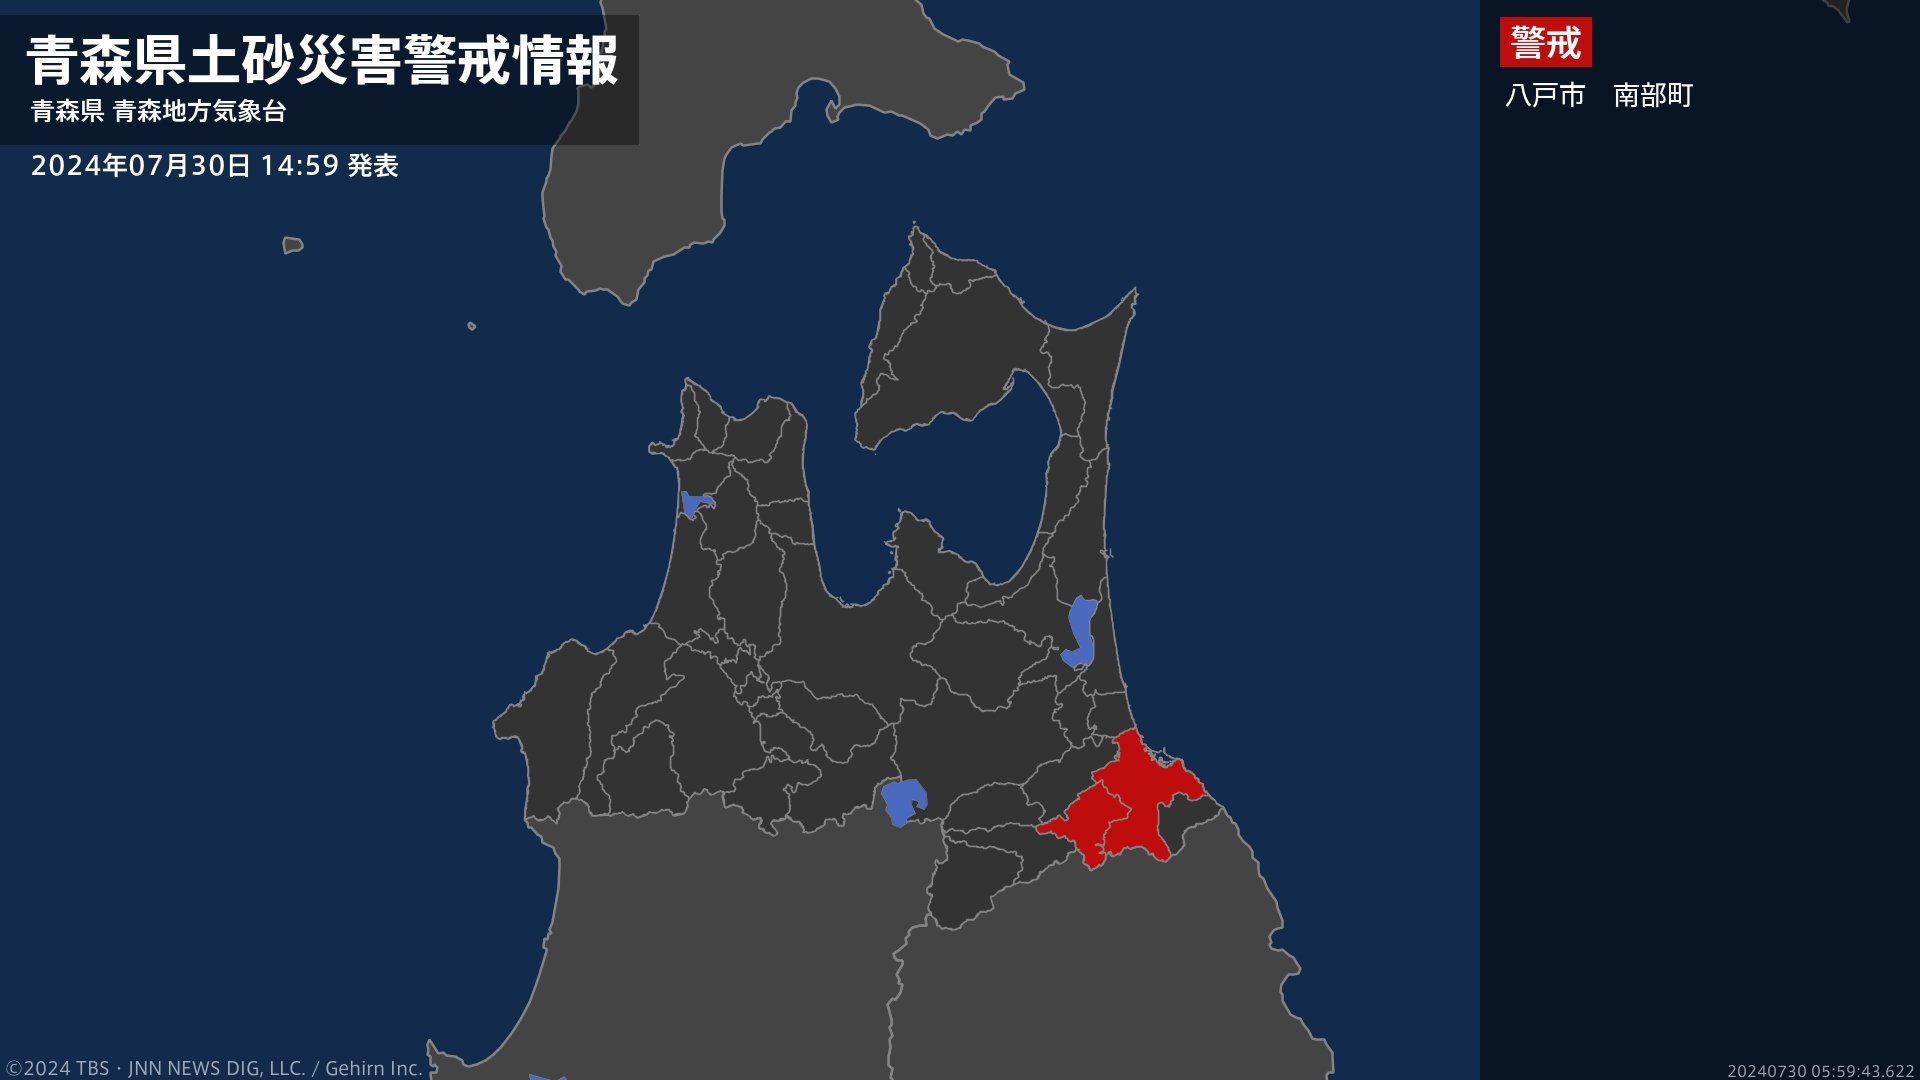 【土砂災害警戒情報】青森県・南部町に発表